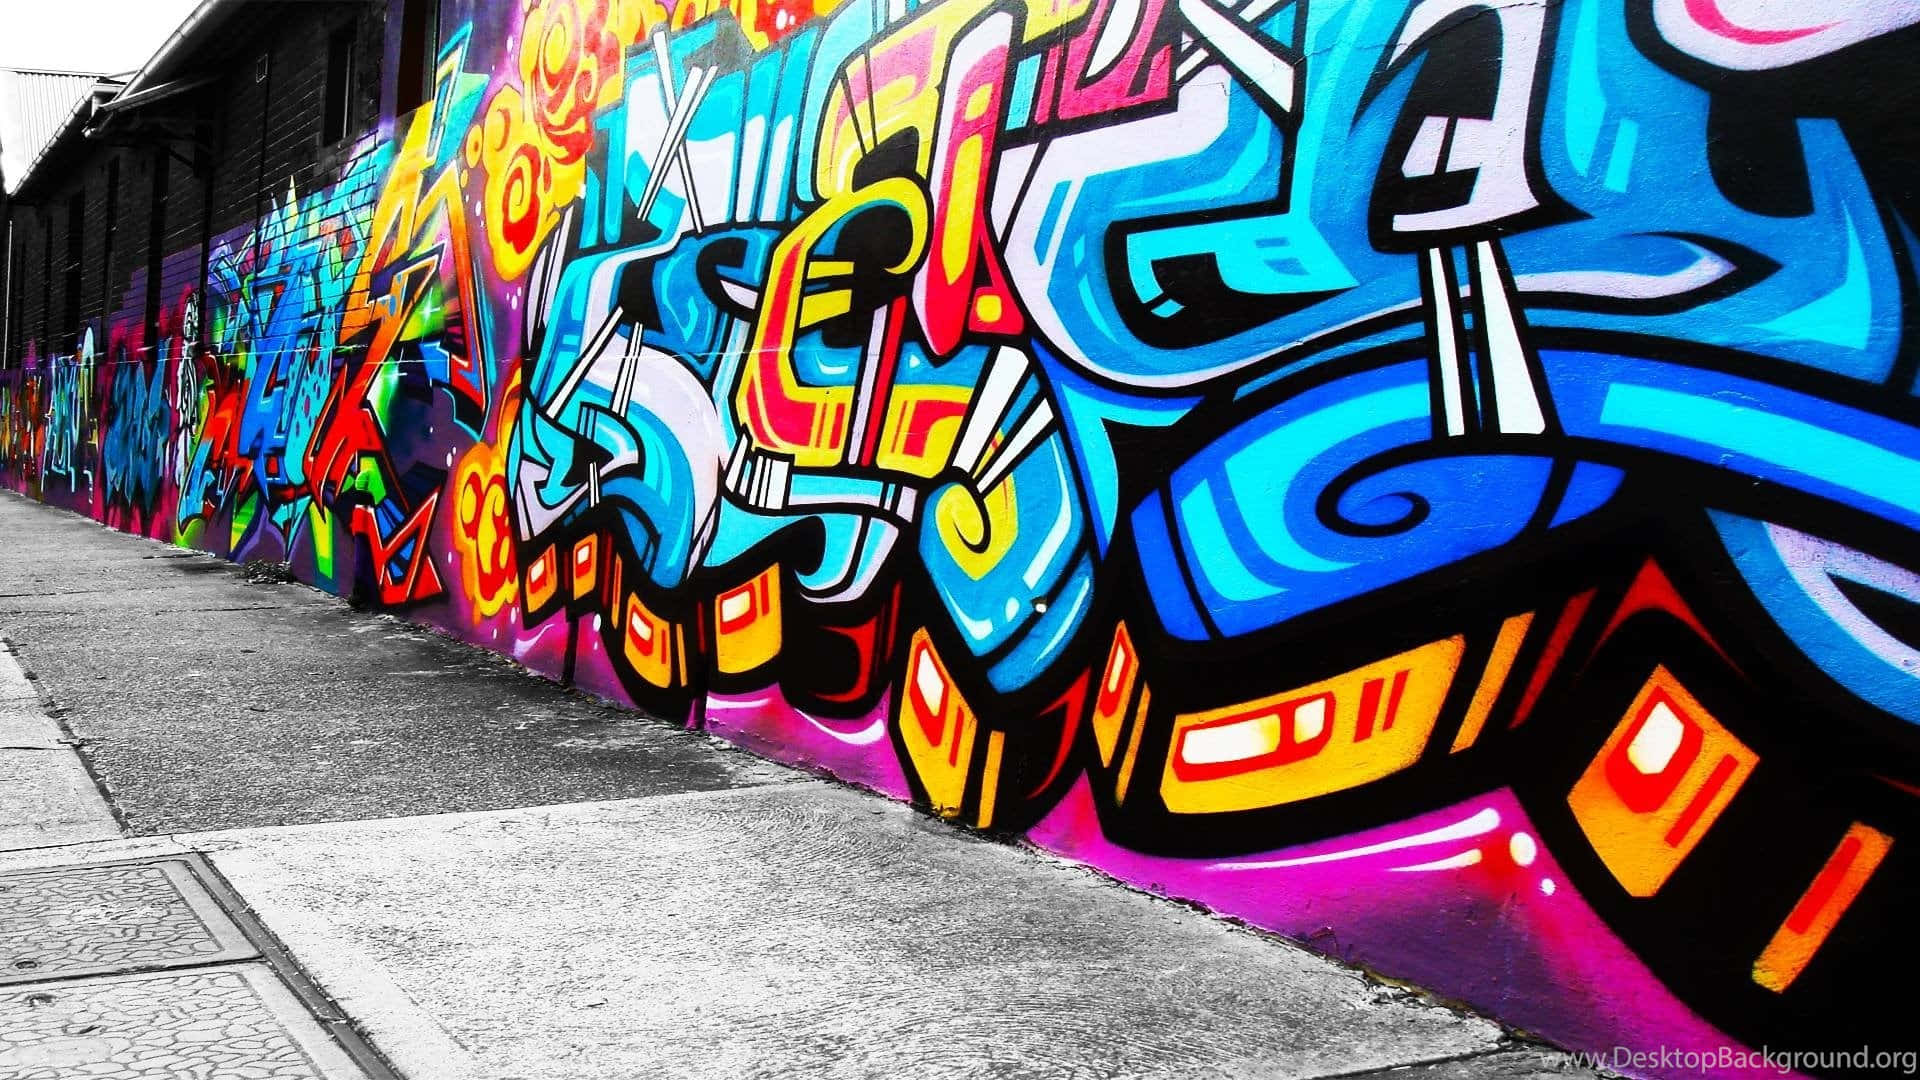 Neon Graffiti Wall Art Background